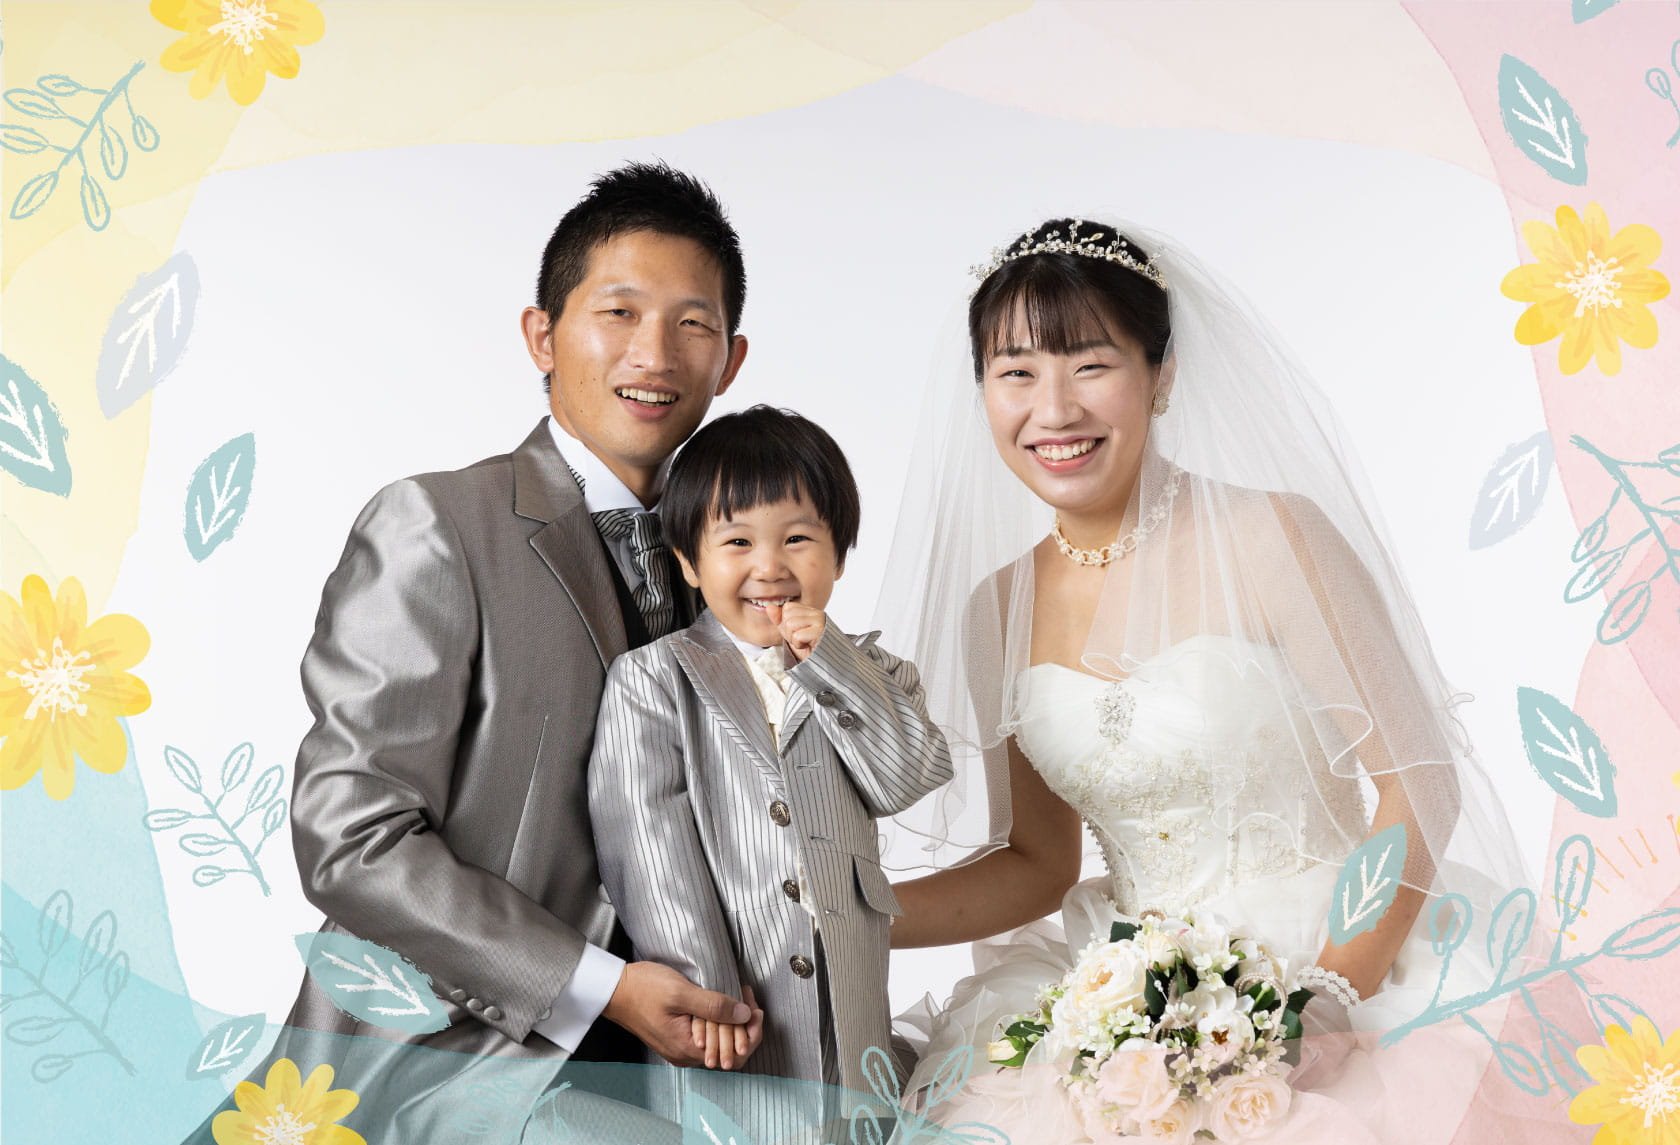 ウェディング・婚礼・結婚記念写真：タキシードを着た新郎、男の子、ウエディングドレスを着た新婦の写真